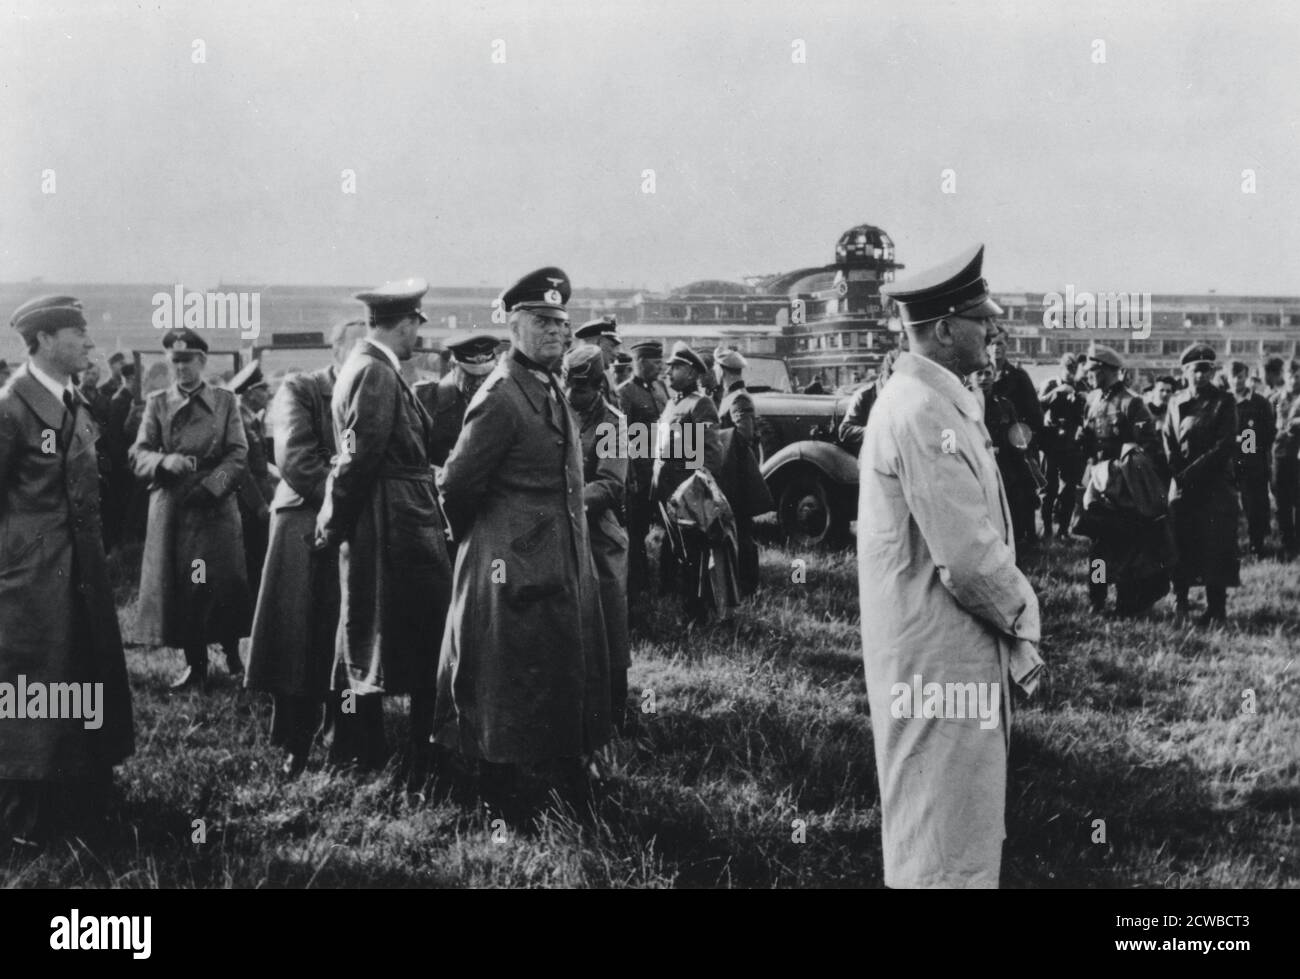 Adolf Hitler inspiziert den gefangenen Flugplatz Le Bourget, Paris, Frankreich, 23. Juni 1940. Hitlers Obergeneral, Wilhelm Keitel, ist hinter ihm abgebildet. Der Fotograf ist unbekannt. Stockfoto